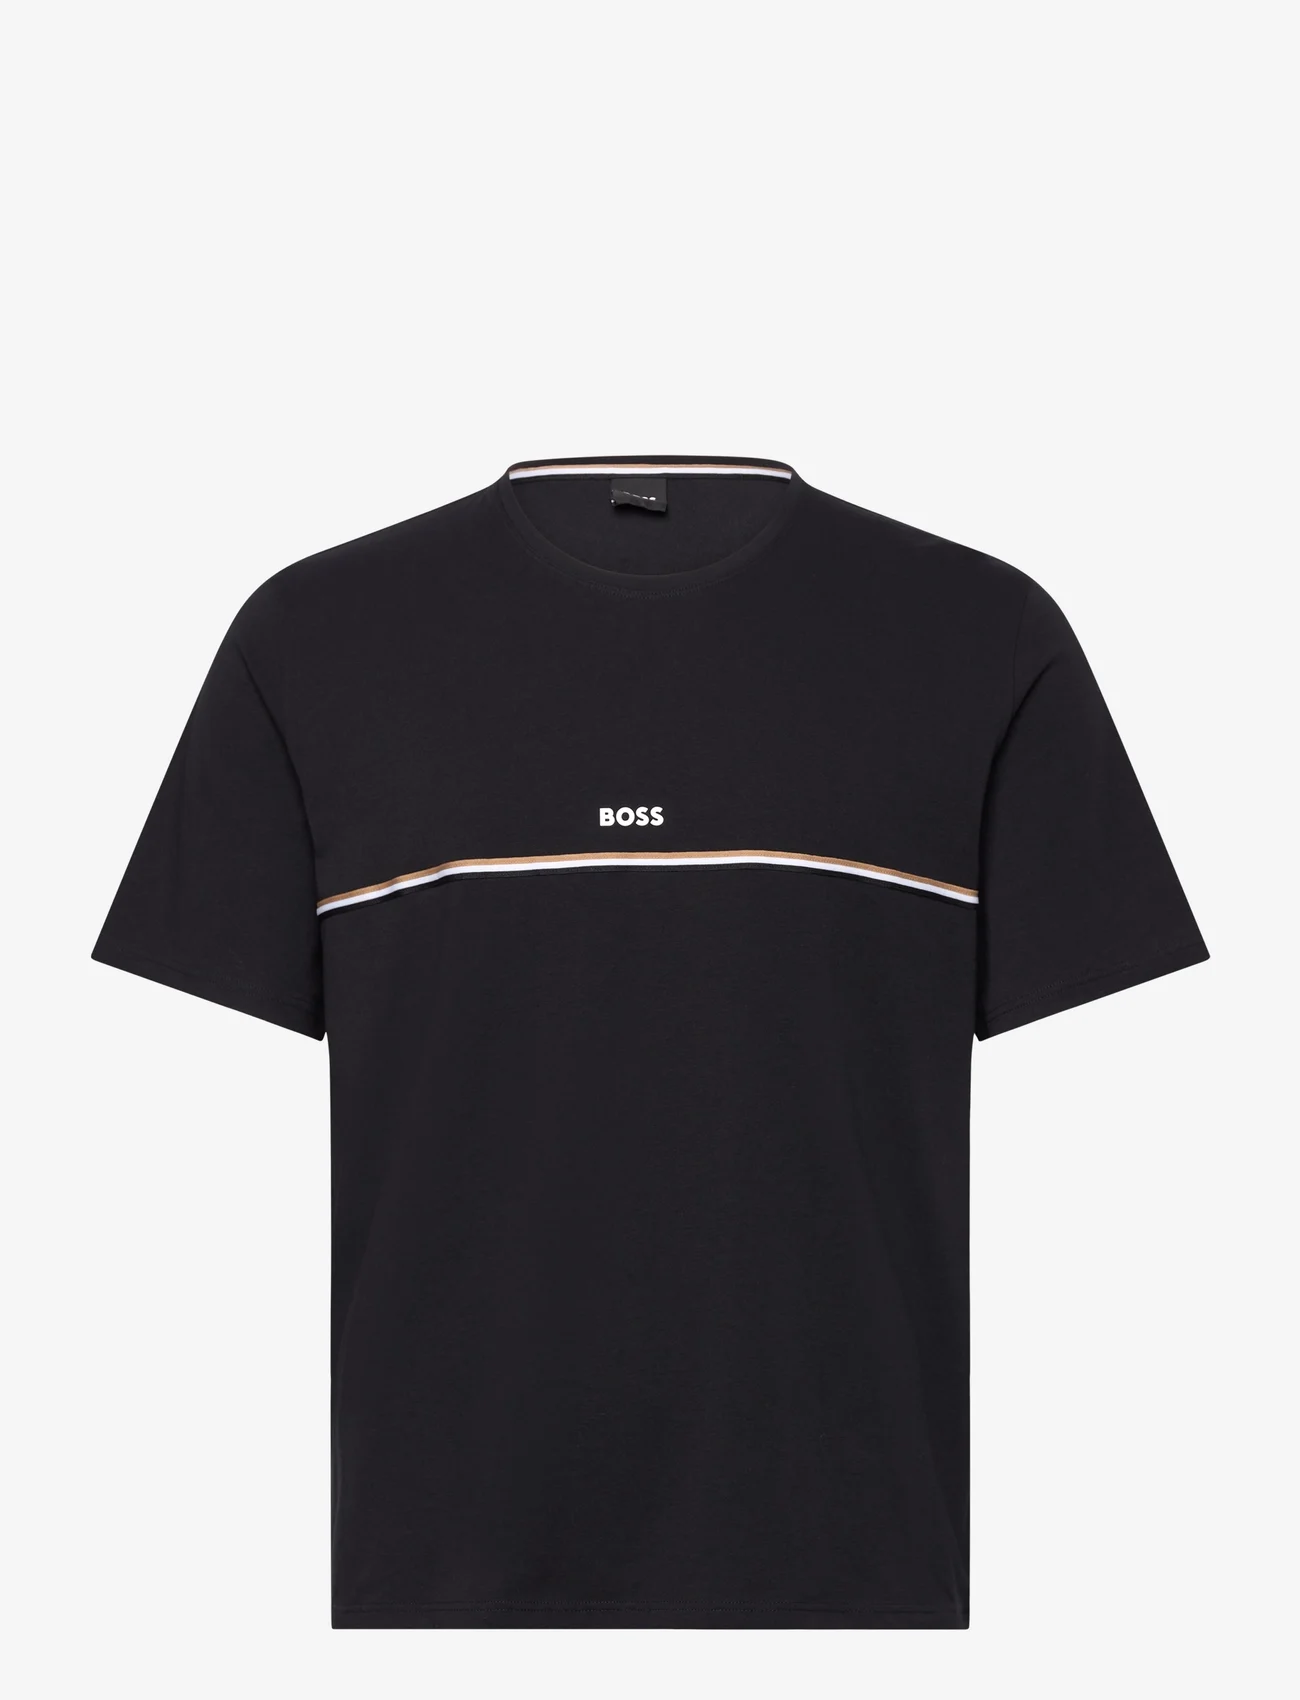 BOSS - Unique T-Shirt - zemākās cenas - black - 0